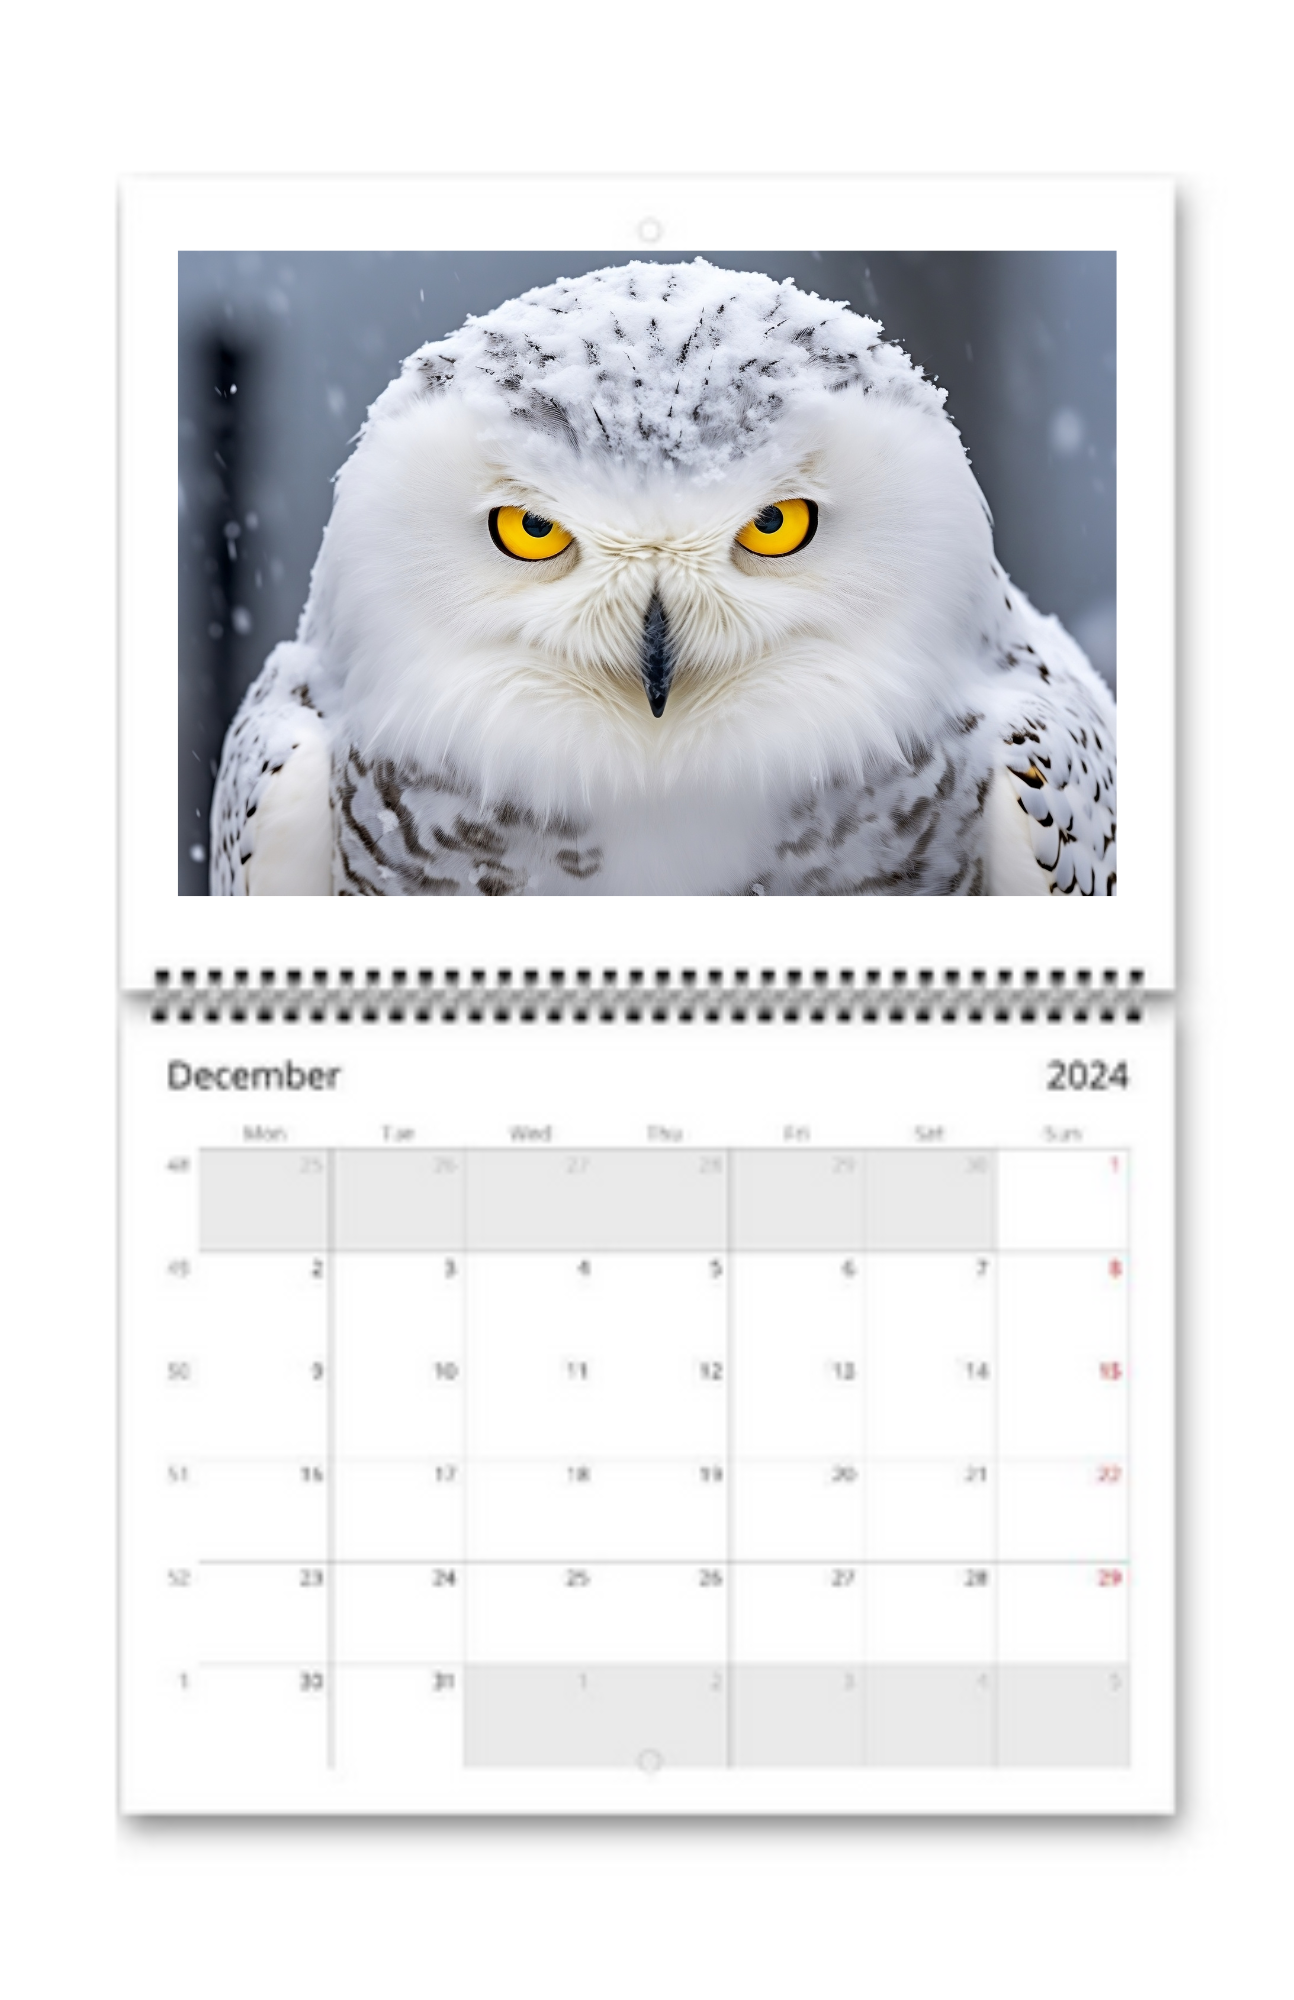 Birds Wall Calendar 2024